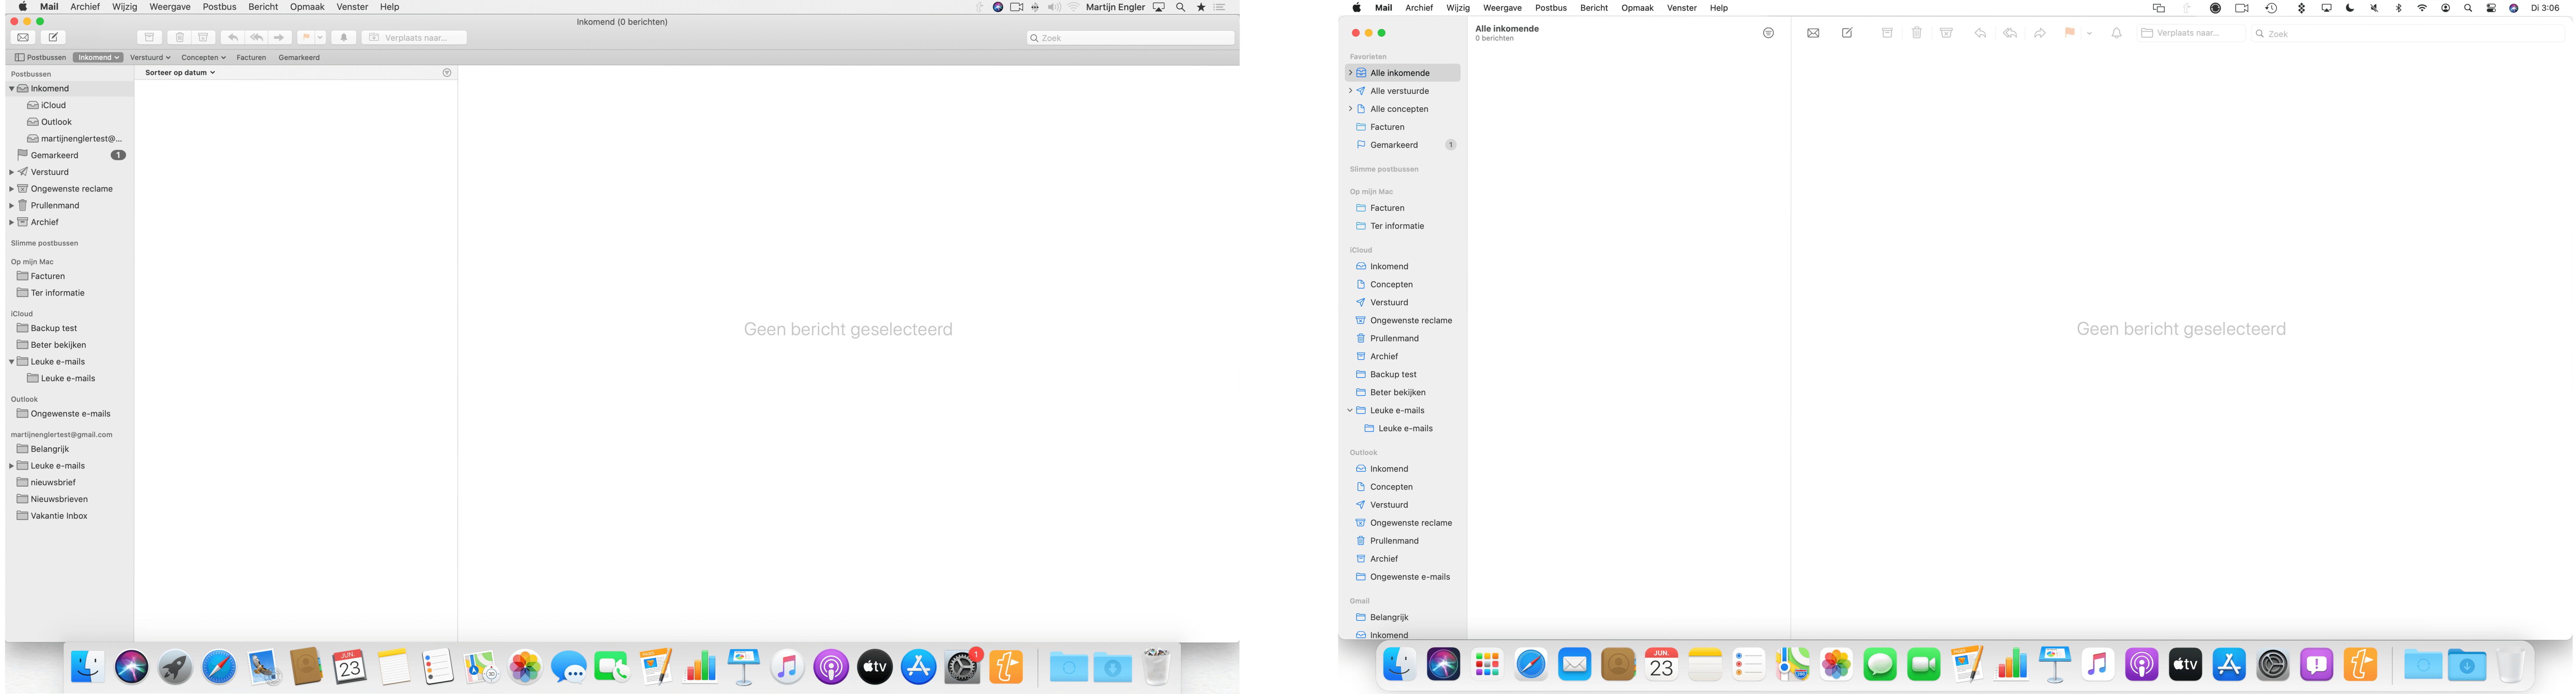 De nieuwste versie van macOS toont duidelijke verschillen ten opzichte van de vorige